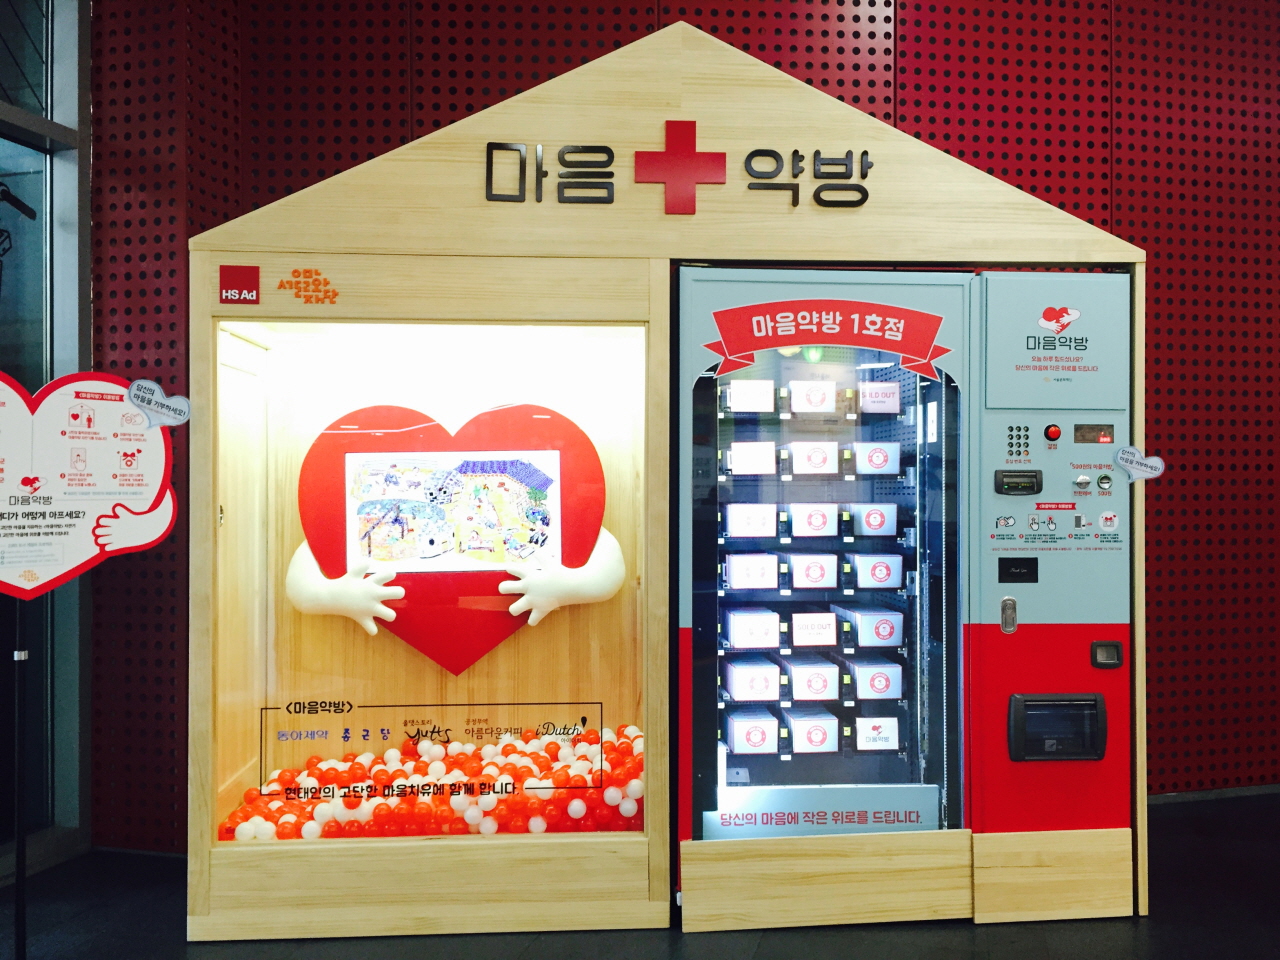 서울시청 지하 1층 시민청에 설치된 마음치유 자판기 <마음약방>의 설치모습이다. 